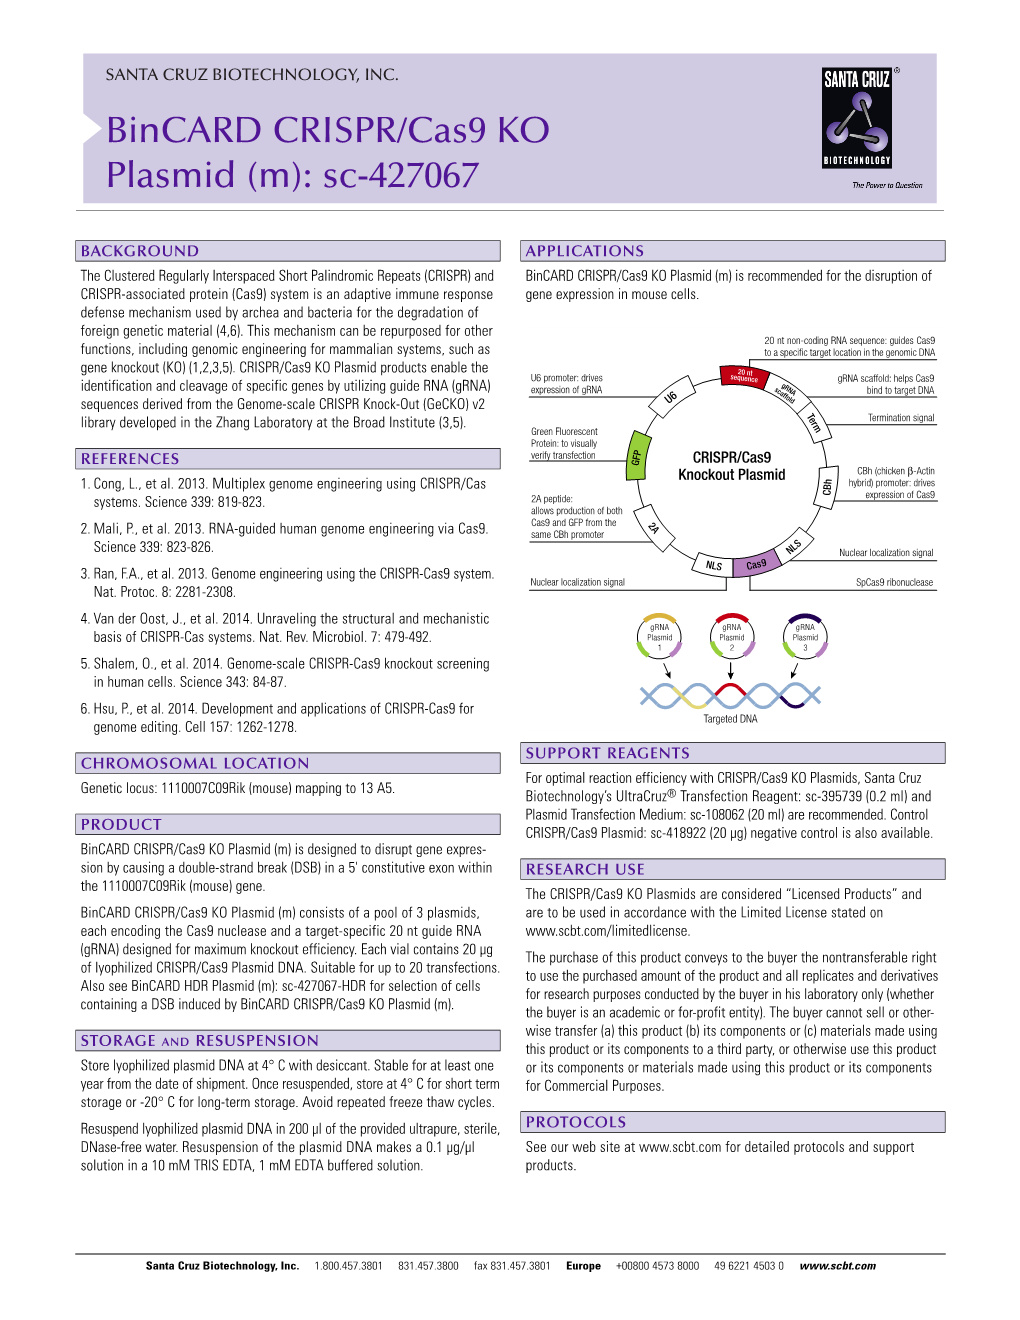 Bincard CRISPR/Cas9 KO Plasmid (M): Sc-427067